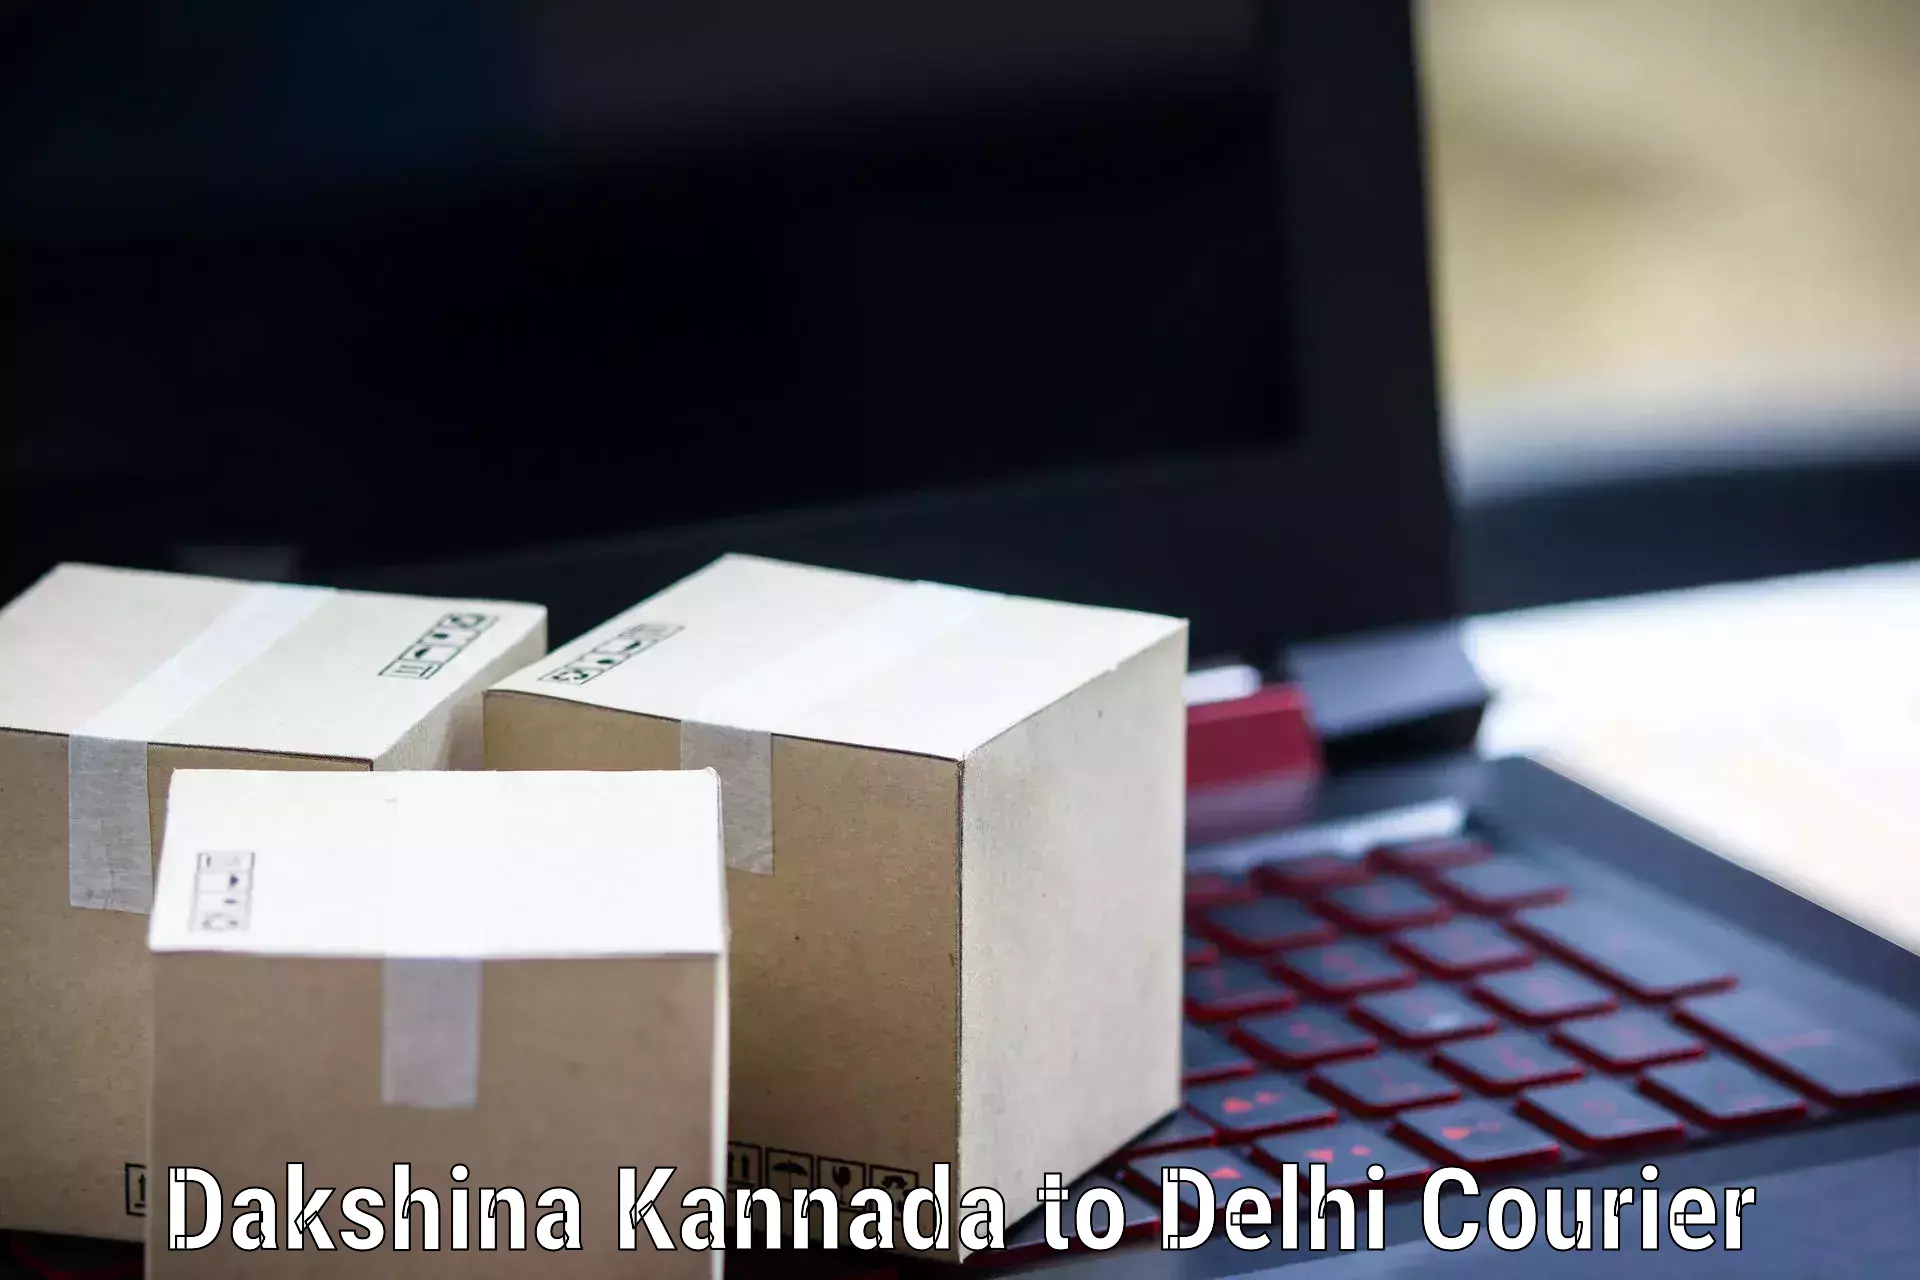 Comprehensive shipping network Dakshina Kannada to NIT Delhi